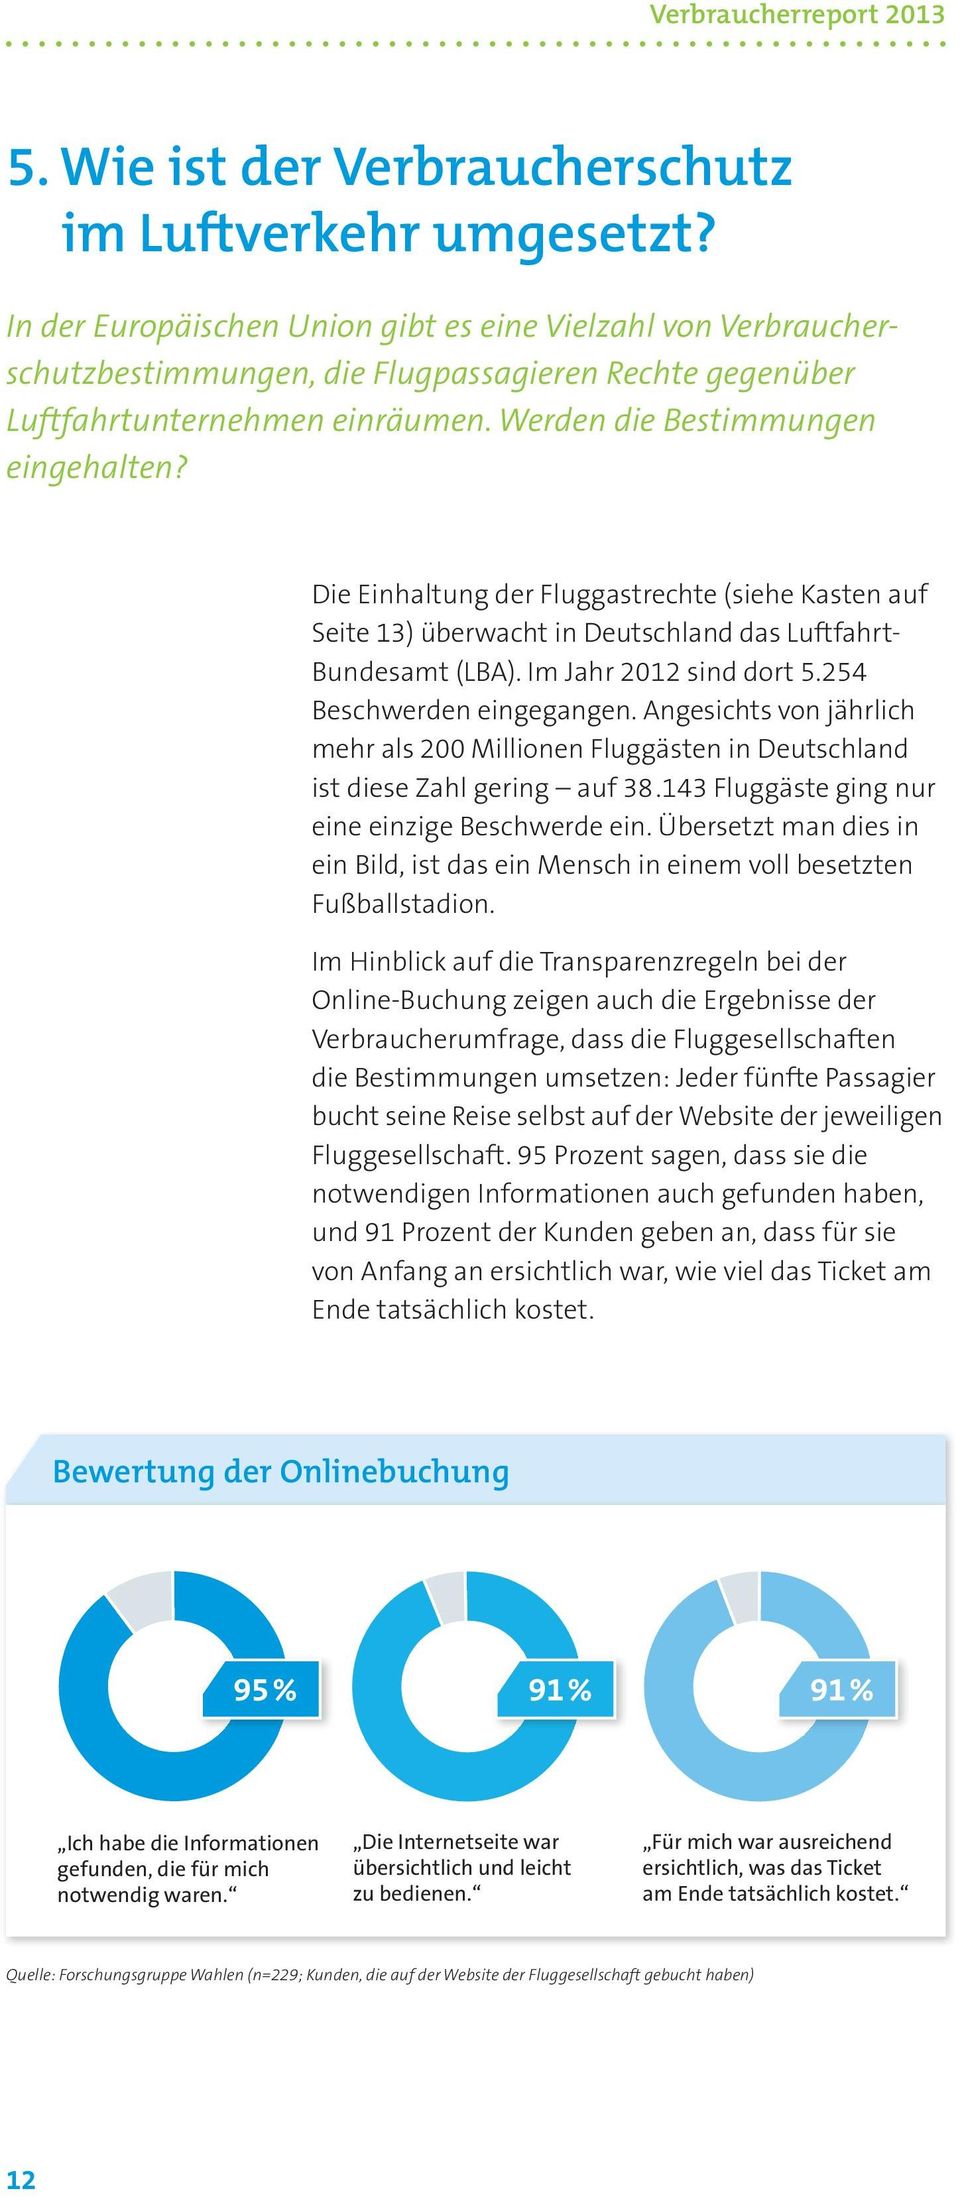 Die Einhaltung der Fluggastrechte (siehe Kasten auf Seite 13) überwacht in Deutschland das Luftfahrt- Bundesamt (LBA). Im Jahr 2012 sind dort 5.254 Beschwerden eingegangen.